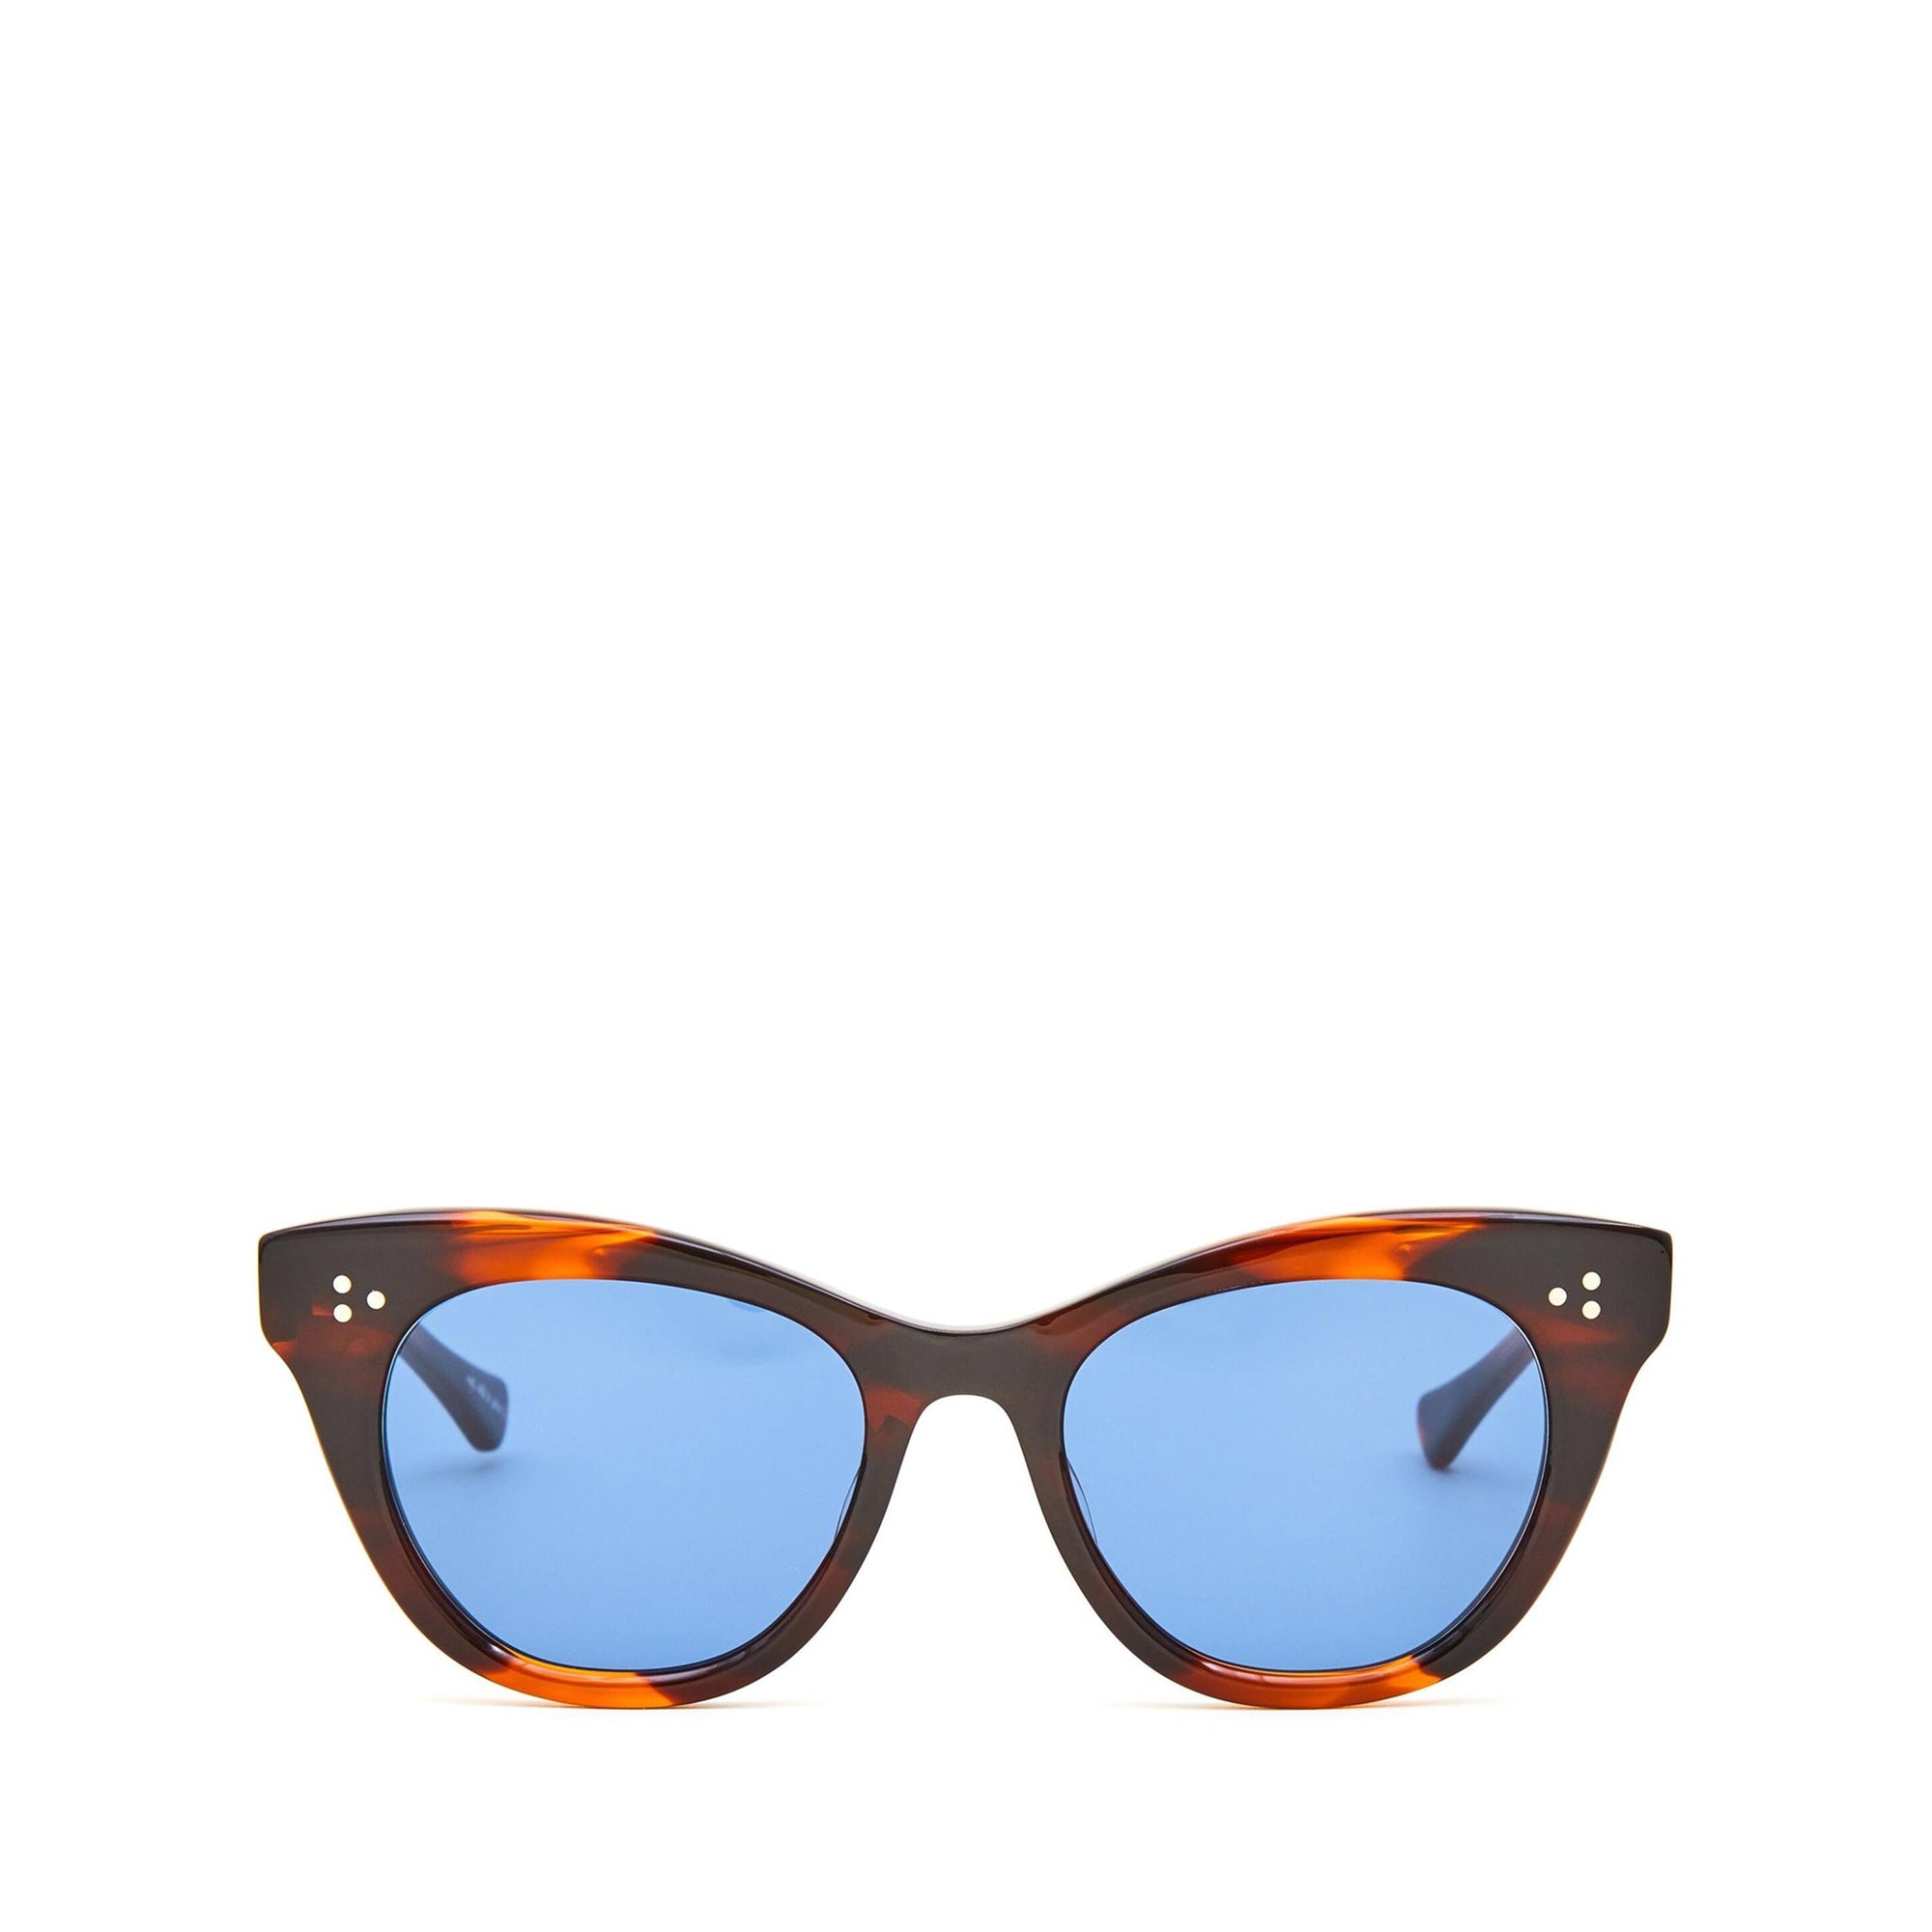 Memphis Sunglasses in blue